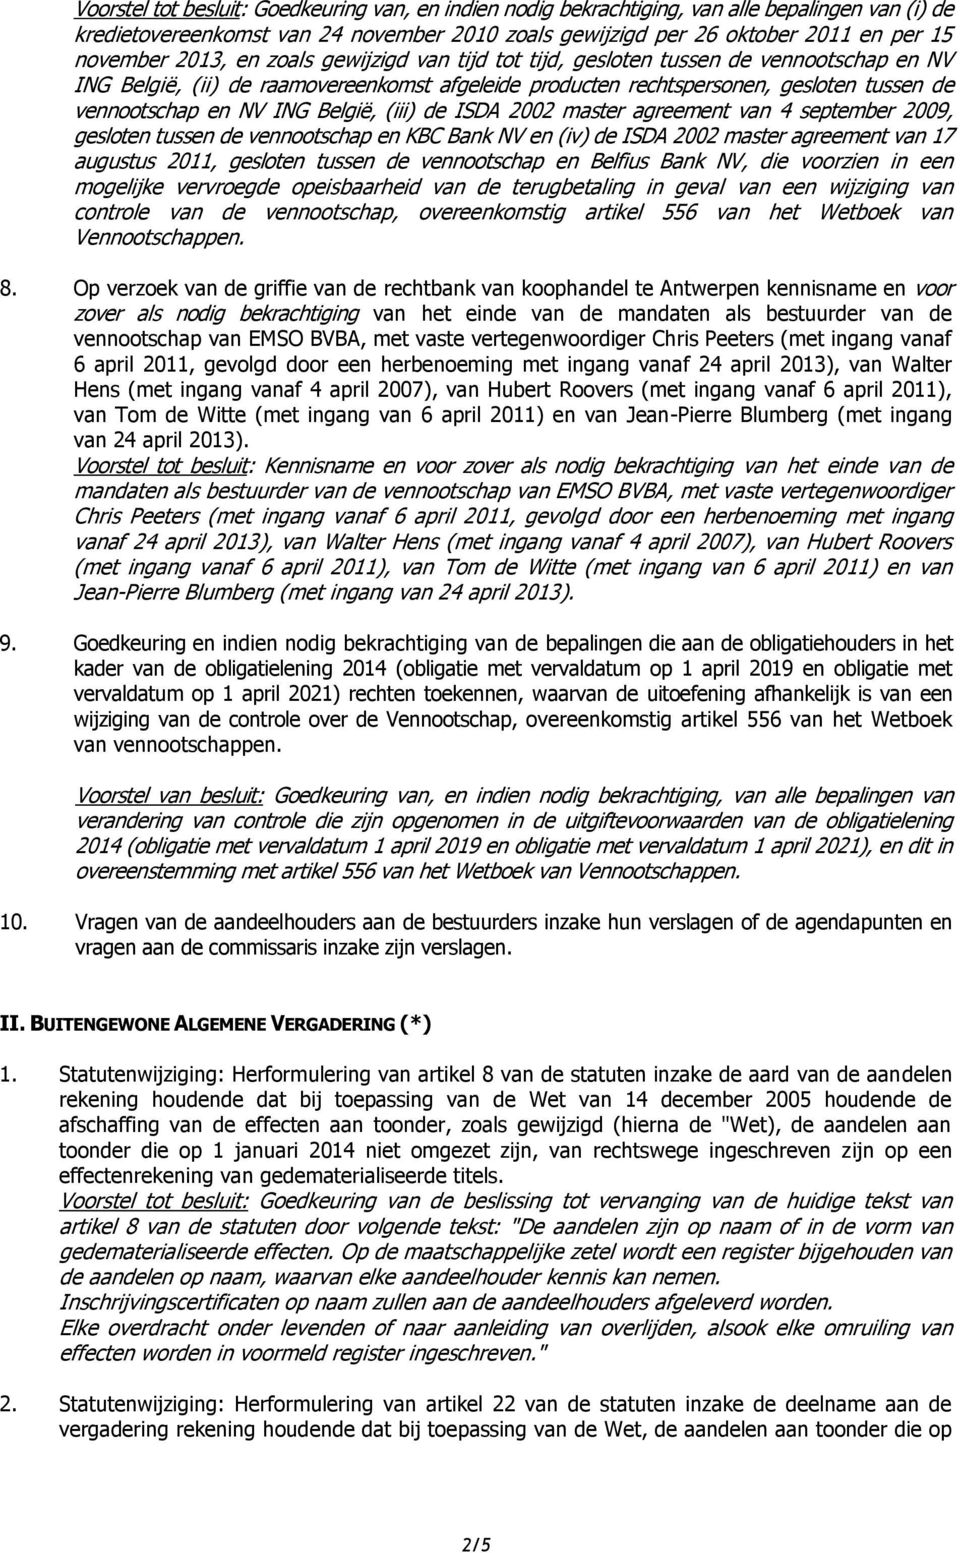 België, (iii) de ISDA 2002 master agreement van 4 september 2009, gesloten tussen de vennootschap en KBC Bank NV en (iv) de ISDA 2002 master agreement van 17 augustus 2011, gesloten tussen de